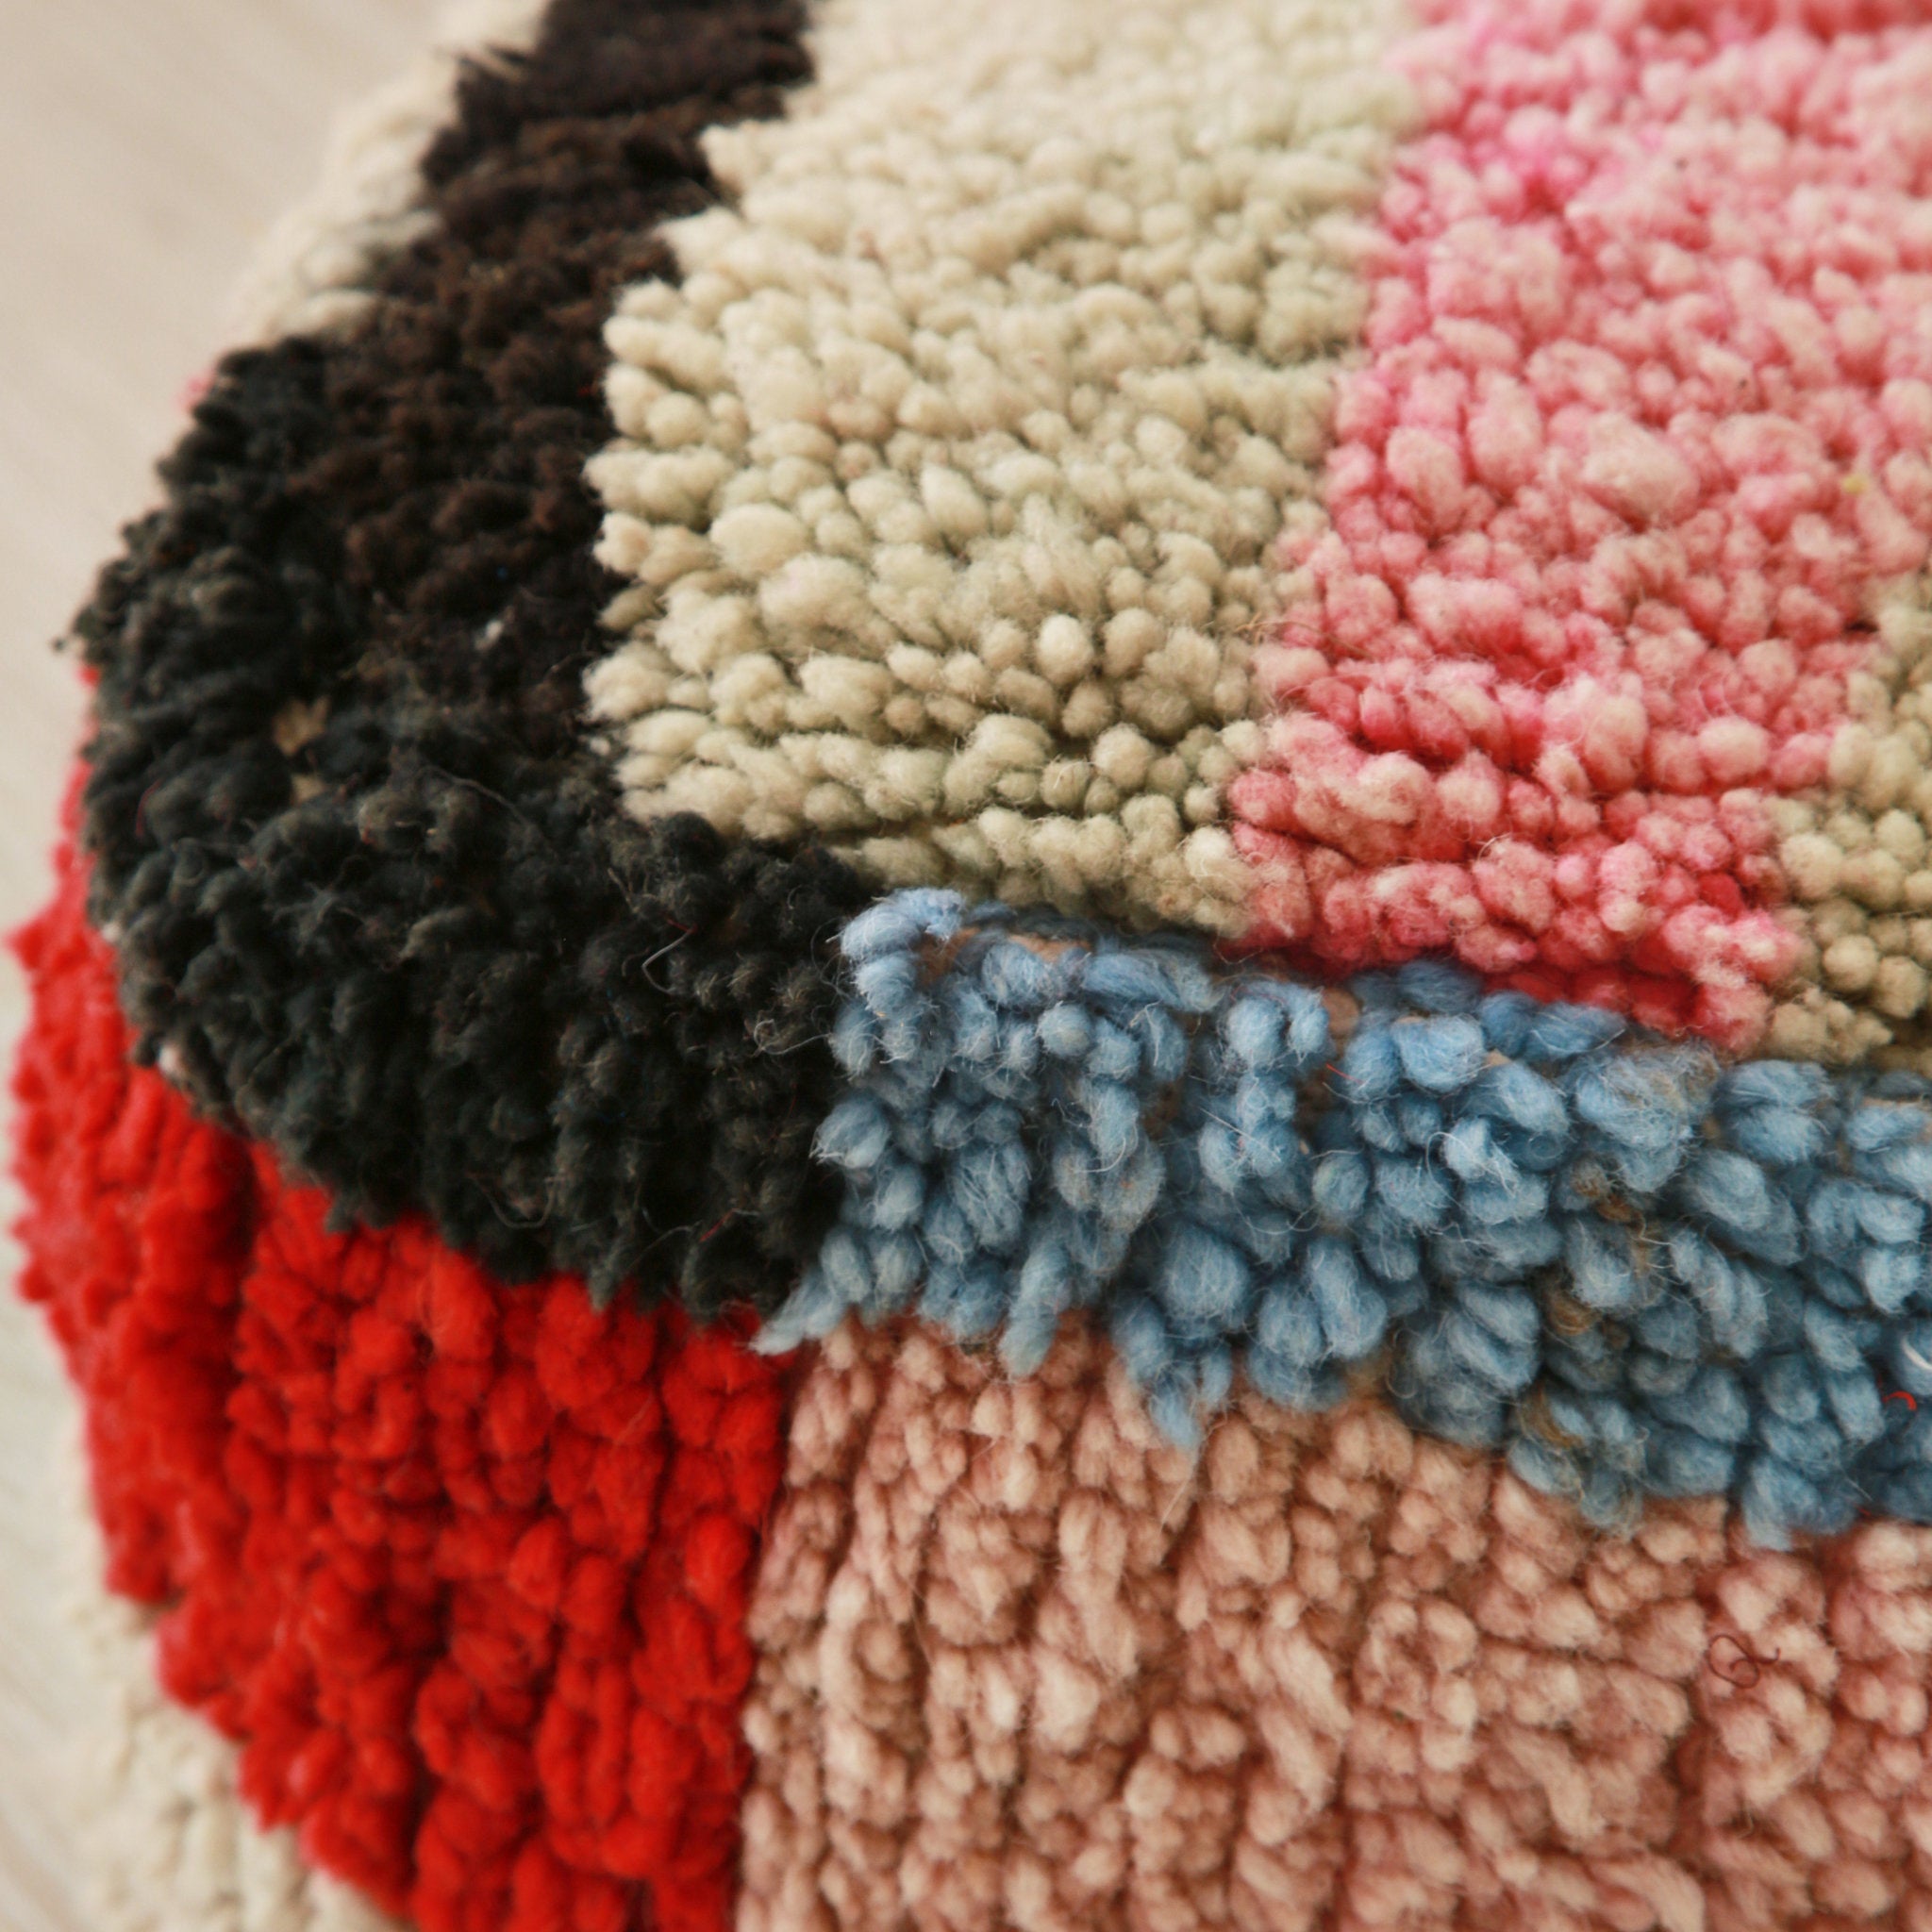 dettaglio dell'angolo di un pouf con rettangoli di lana colorata